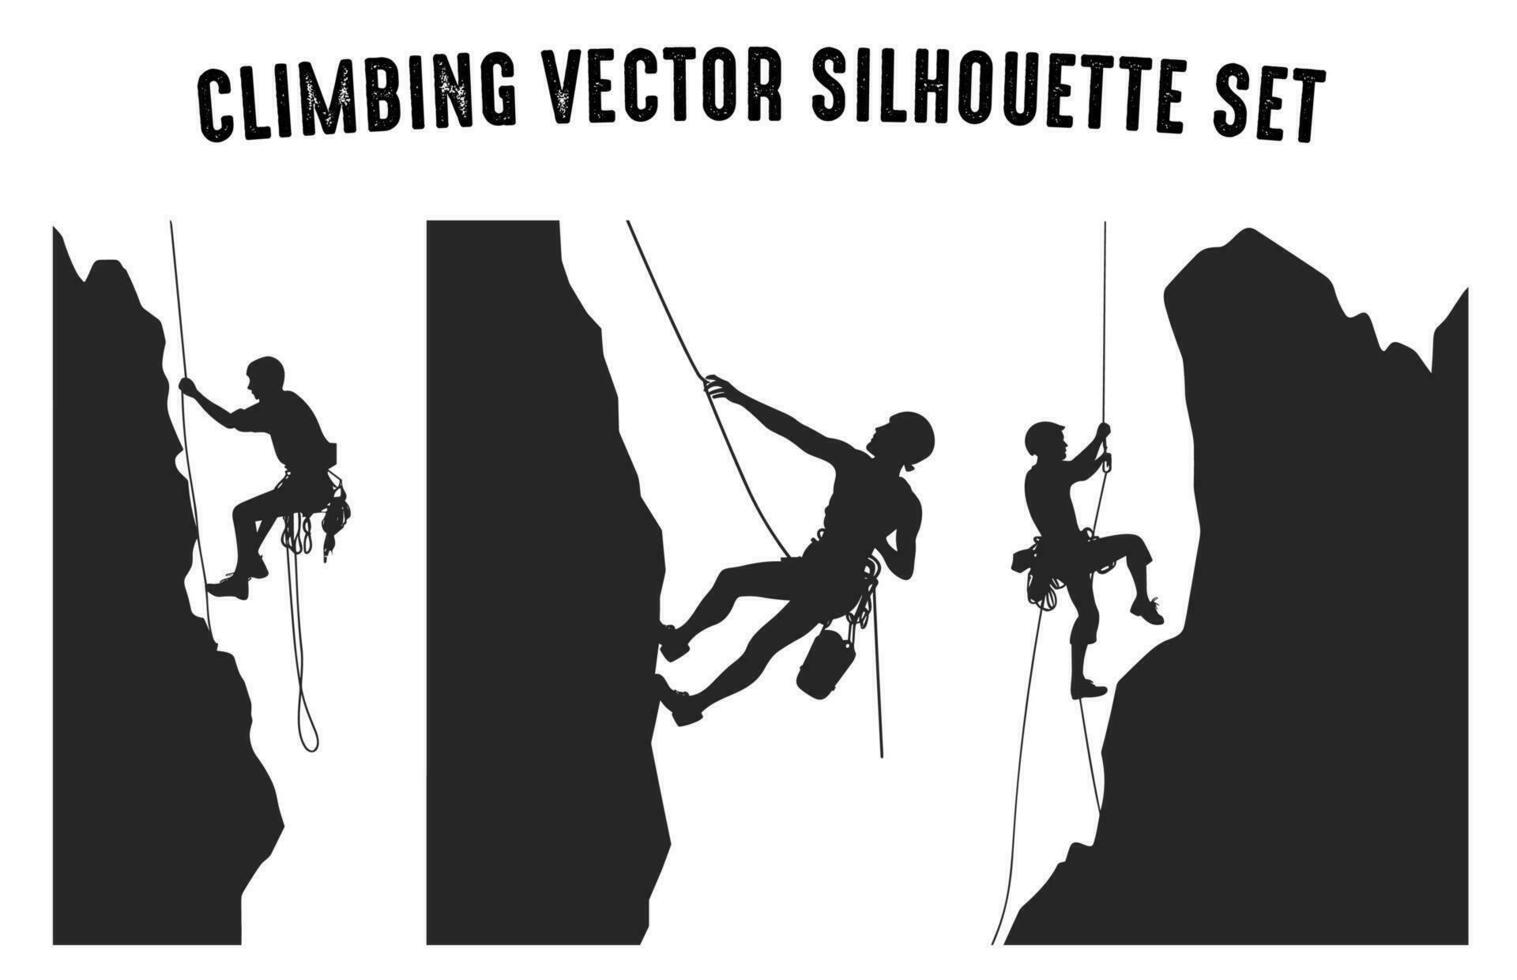 grimpeur vecteur silhouette clipart empaqueter, Montagne escalade silhouettes dans différent pose, Roche grimpeur noir silhouette ensemble